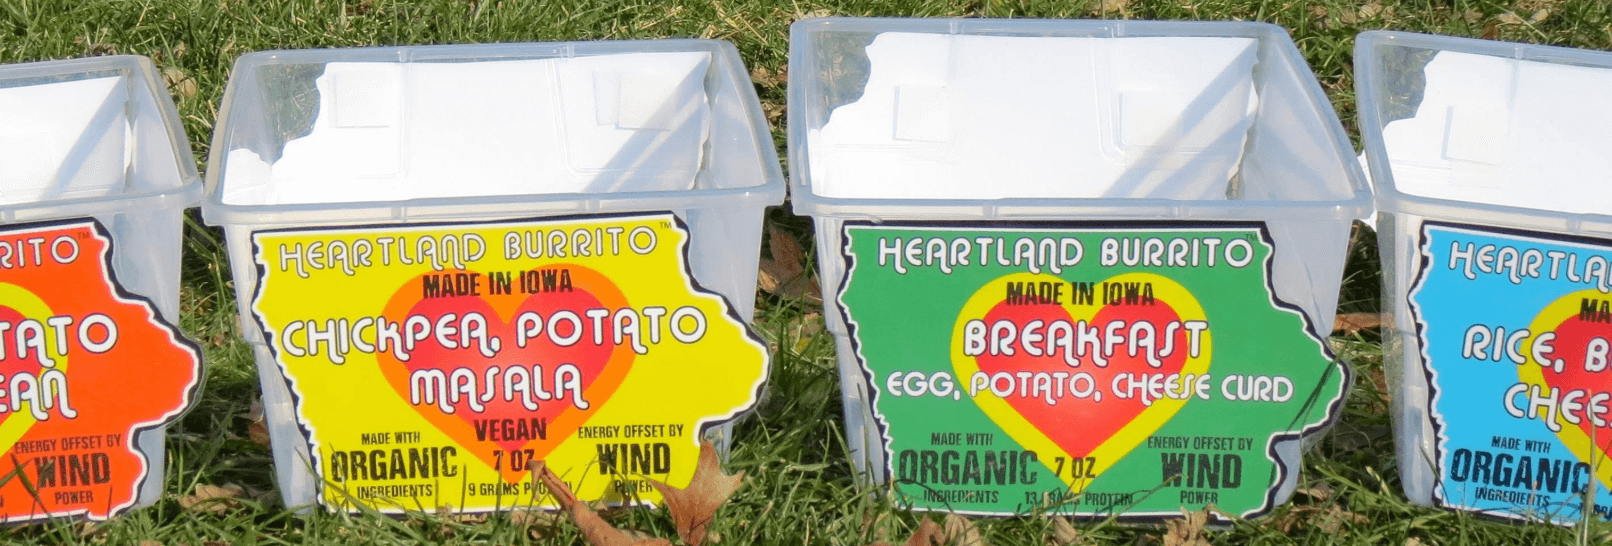 Heartland Burrito